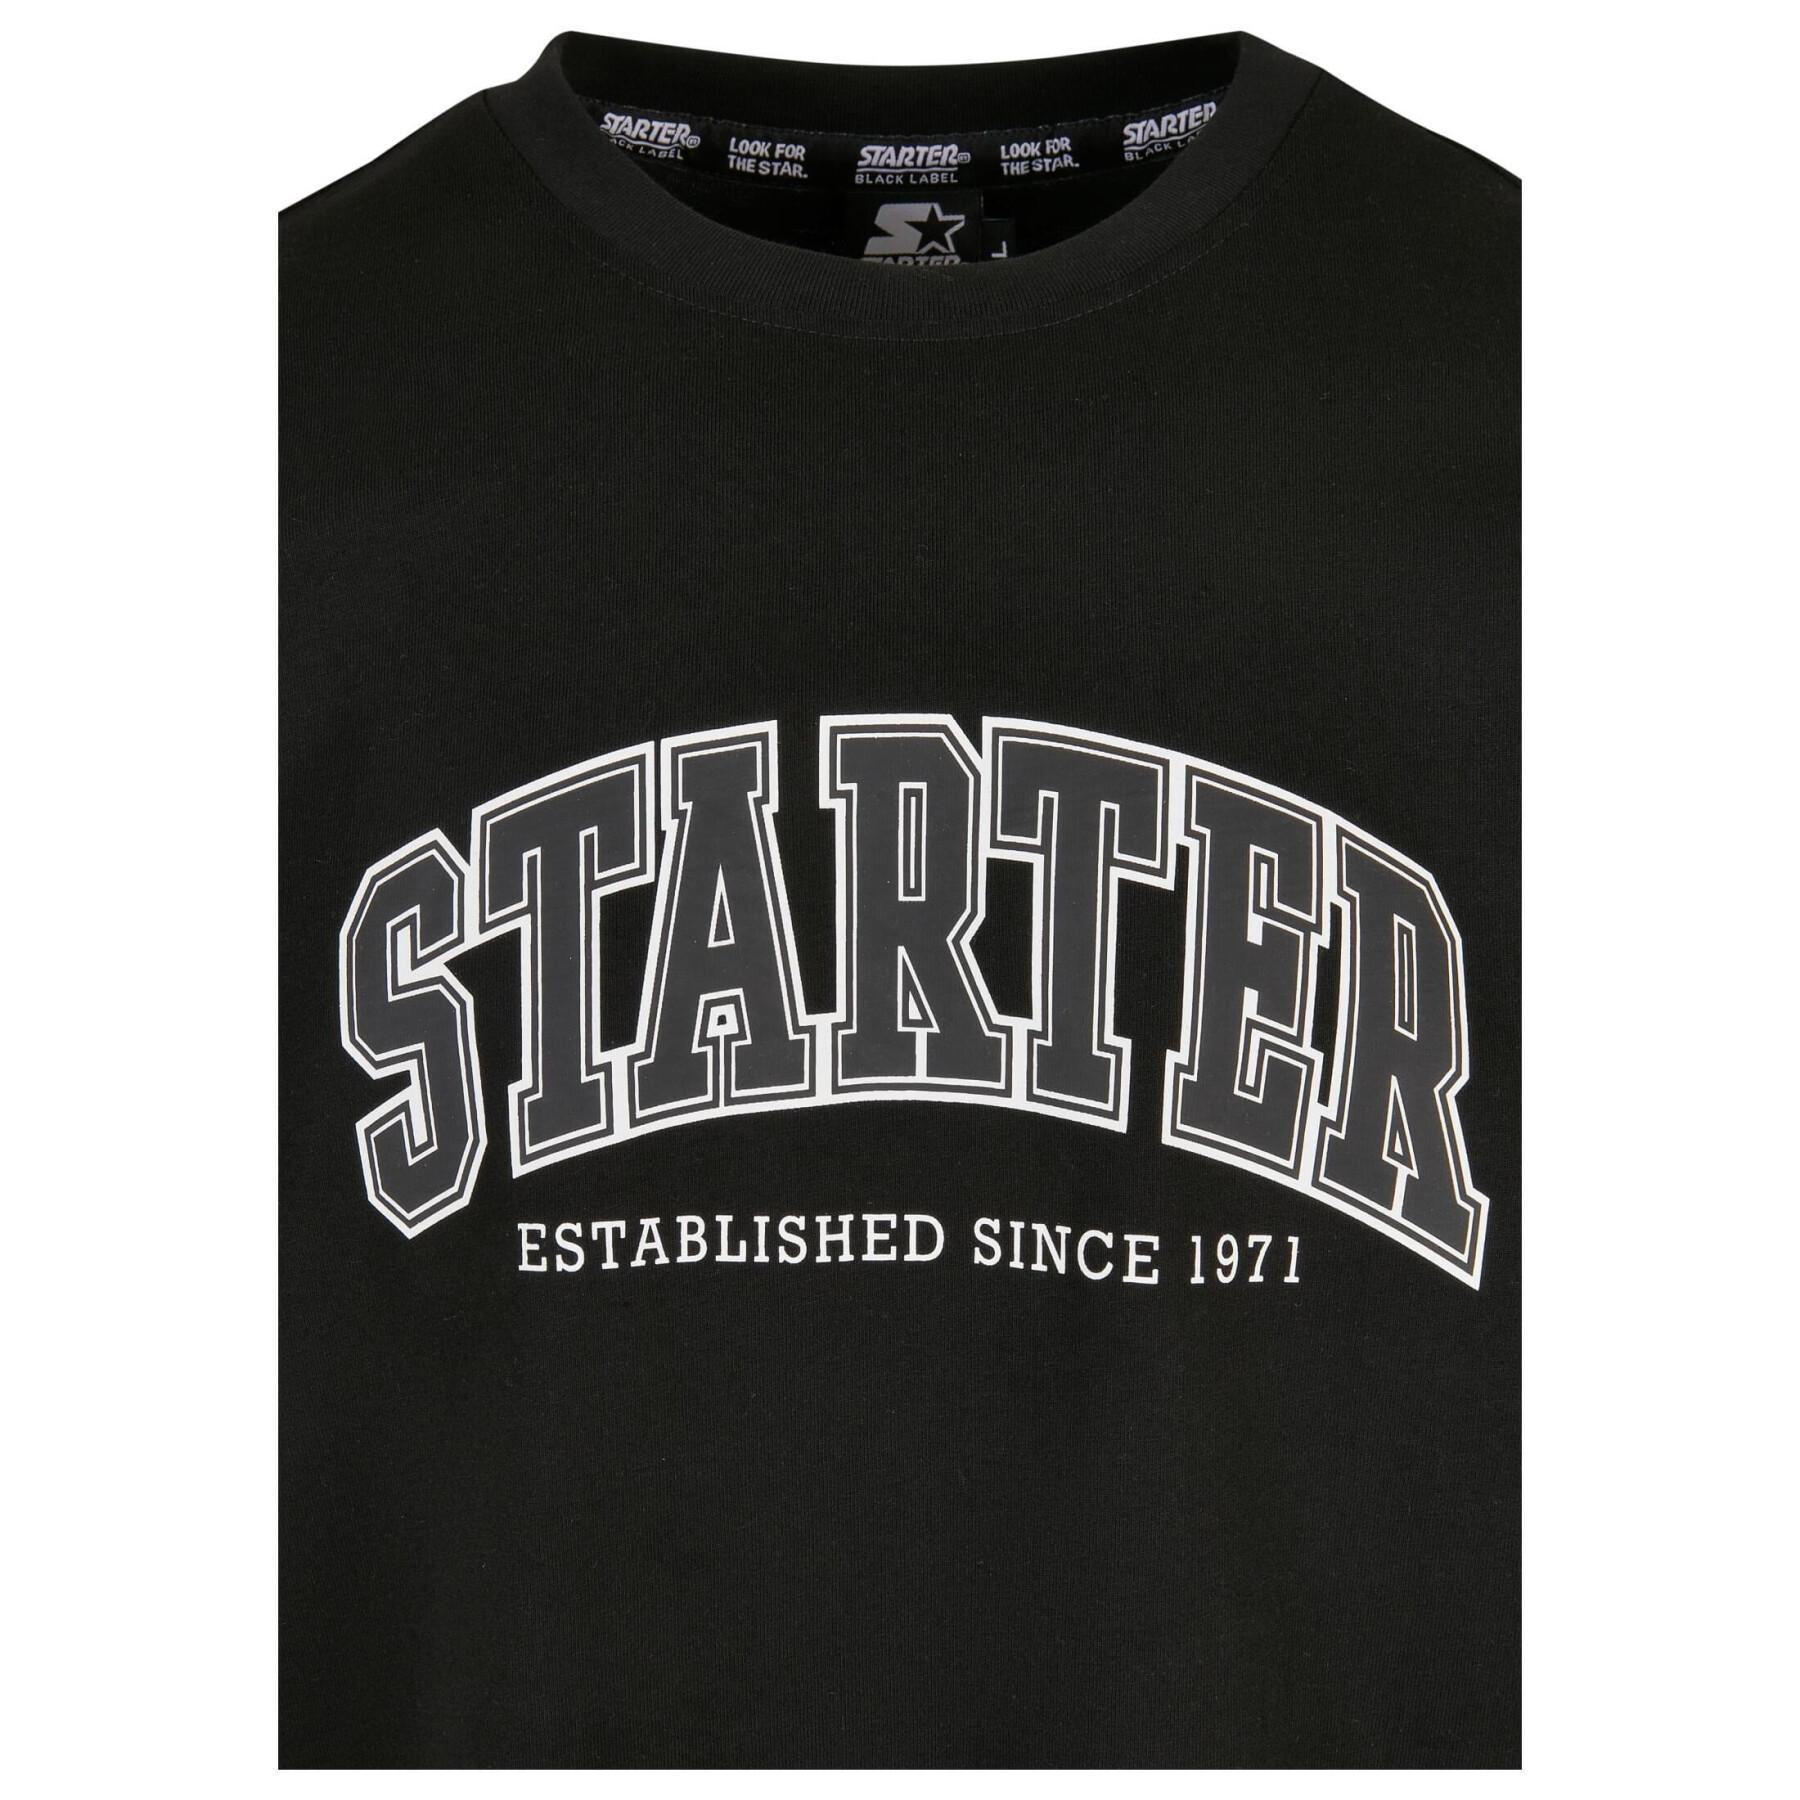 Camiseta Starter College